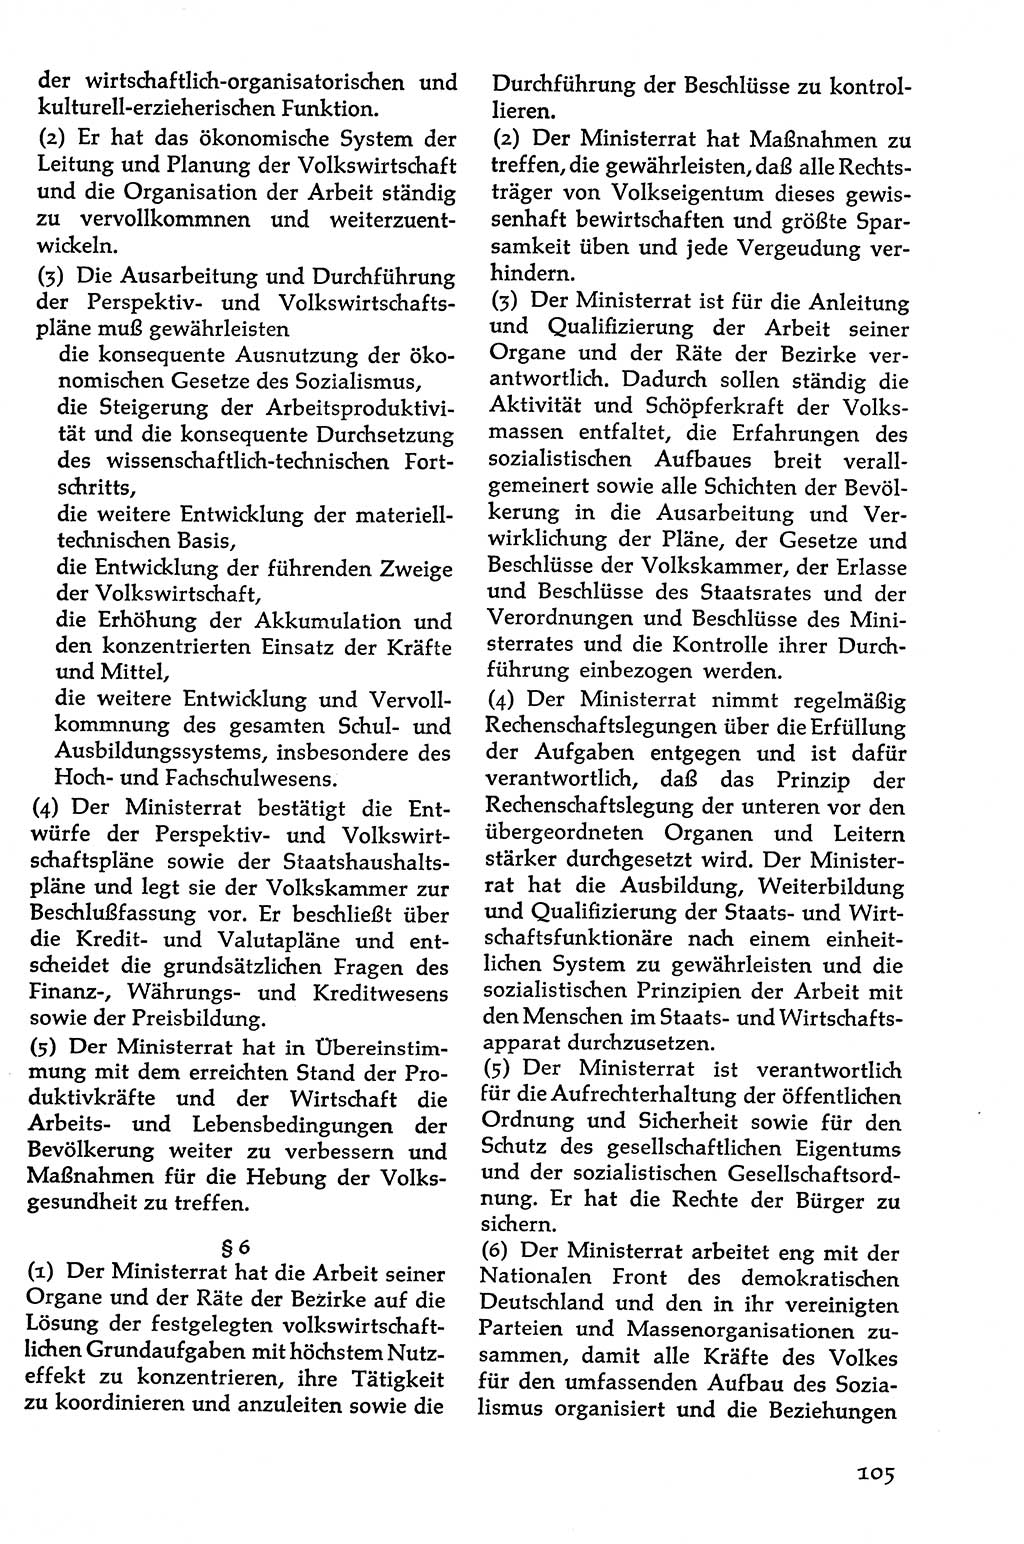 Volksdemokratische Ordnung in Mitteldeutschland [Deutsche Demokratische Republik (DDR)], Texte zur verfassungsrechtlichen Situation 1963, Seite 105 (Volksdem. Ordn. Md. DDR 1963, S. 105)